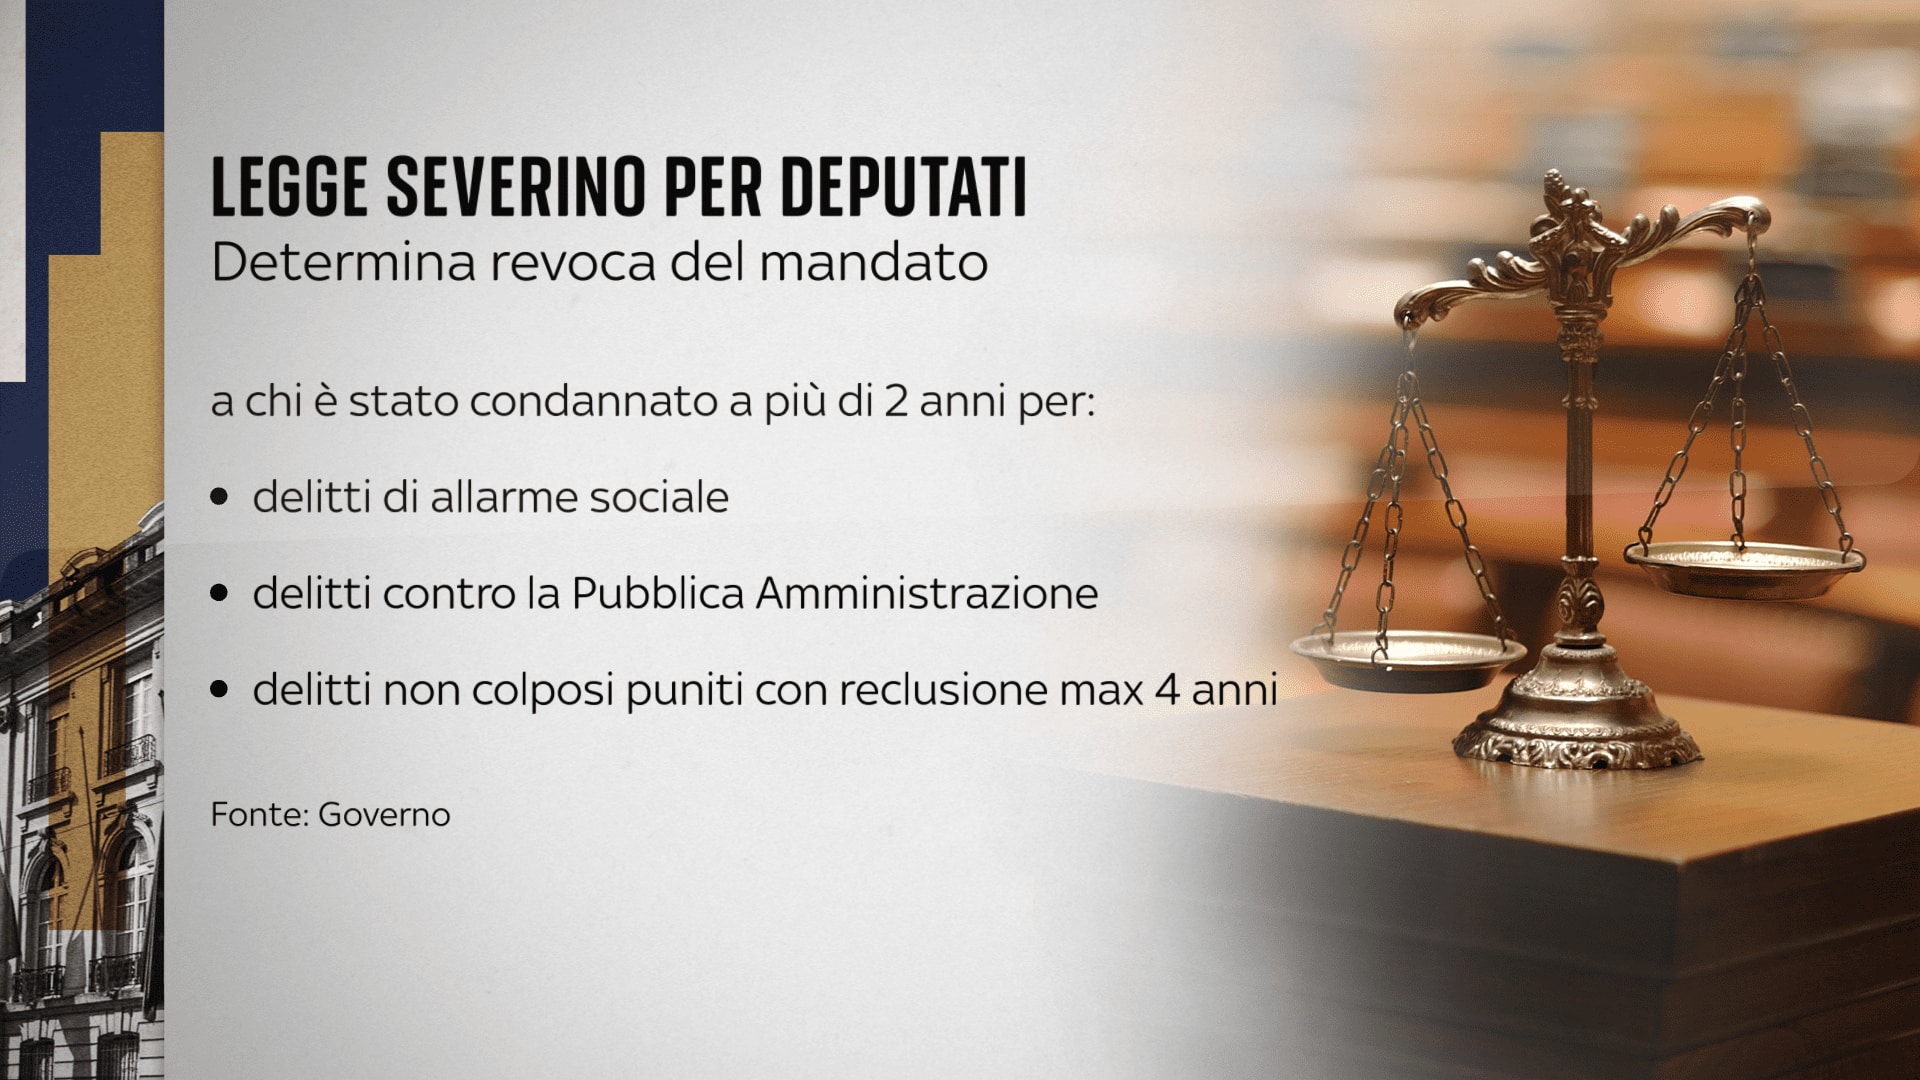 La Legge Severino in Italia determina i casi di revoca del mandato parlamentare